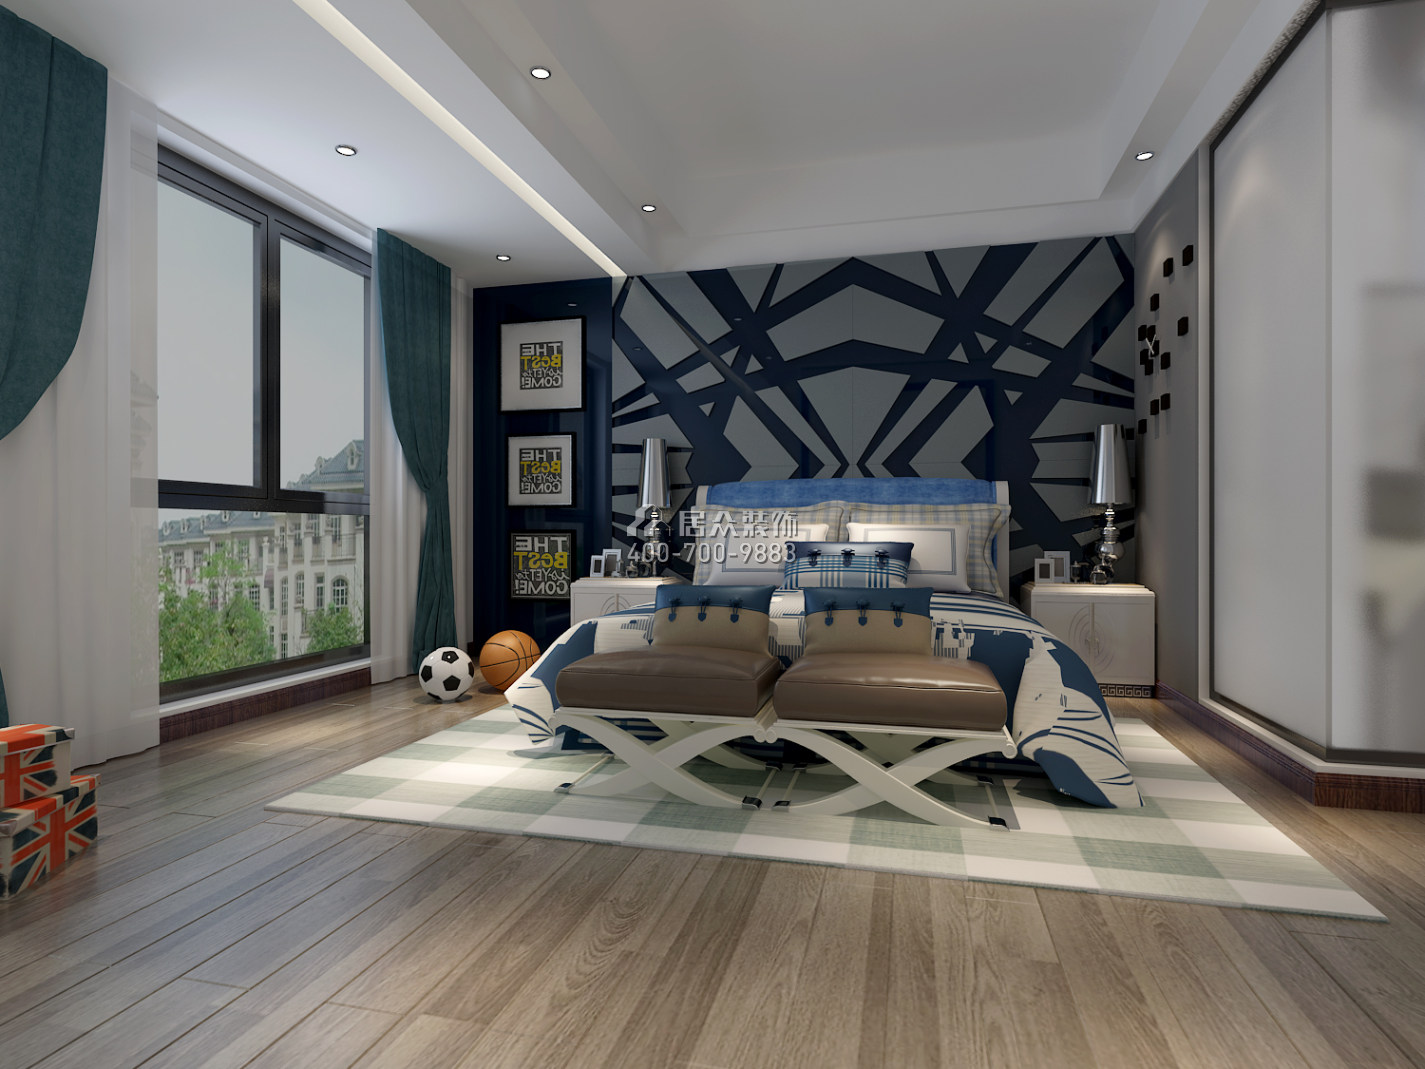 東逸灣400平方米現代簡約風格別墅戶型臥室裝修效果圖